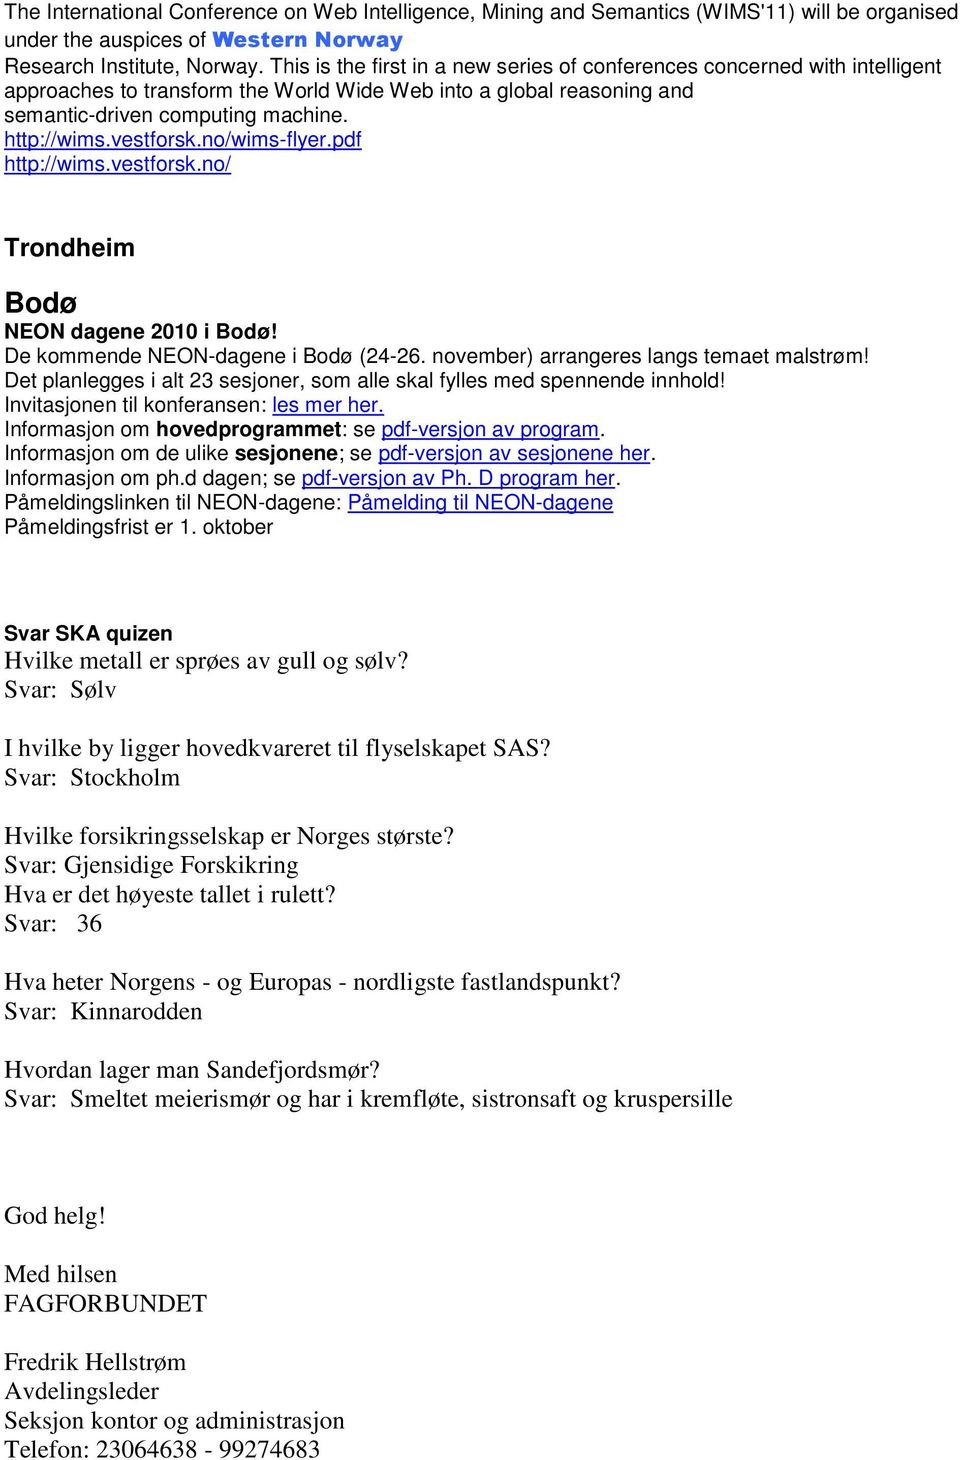 vestforsk.no/wims-flyer.pdf http://wims.vestforsk.no/ Trondheim Bodø NEON dagene 2010 i Bodø! De kommende NEON-dagene i Bodø (24-26. november) arrangeres langs temaet malstrøm!